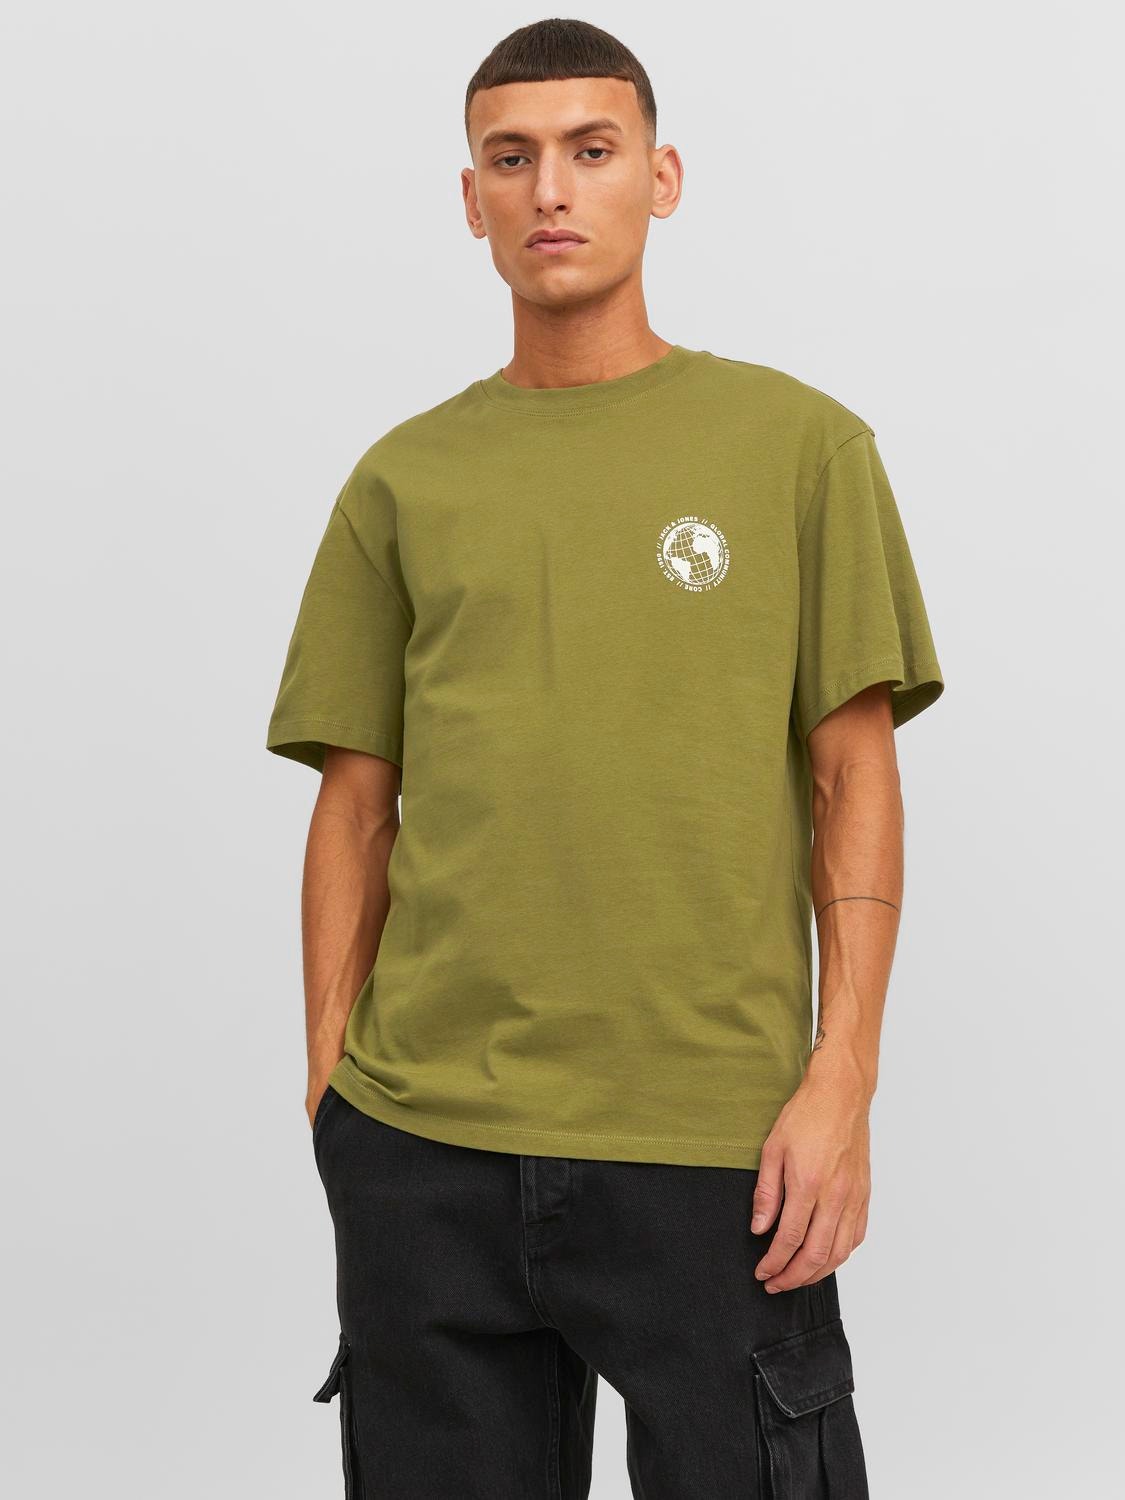 Jack & Jones Bedrukt Ronde hals T-shirt -Olive Branch - 12240279